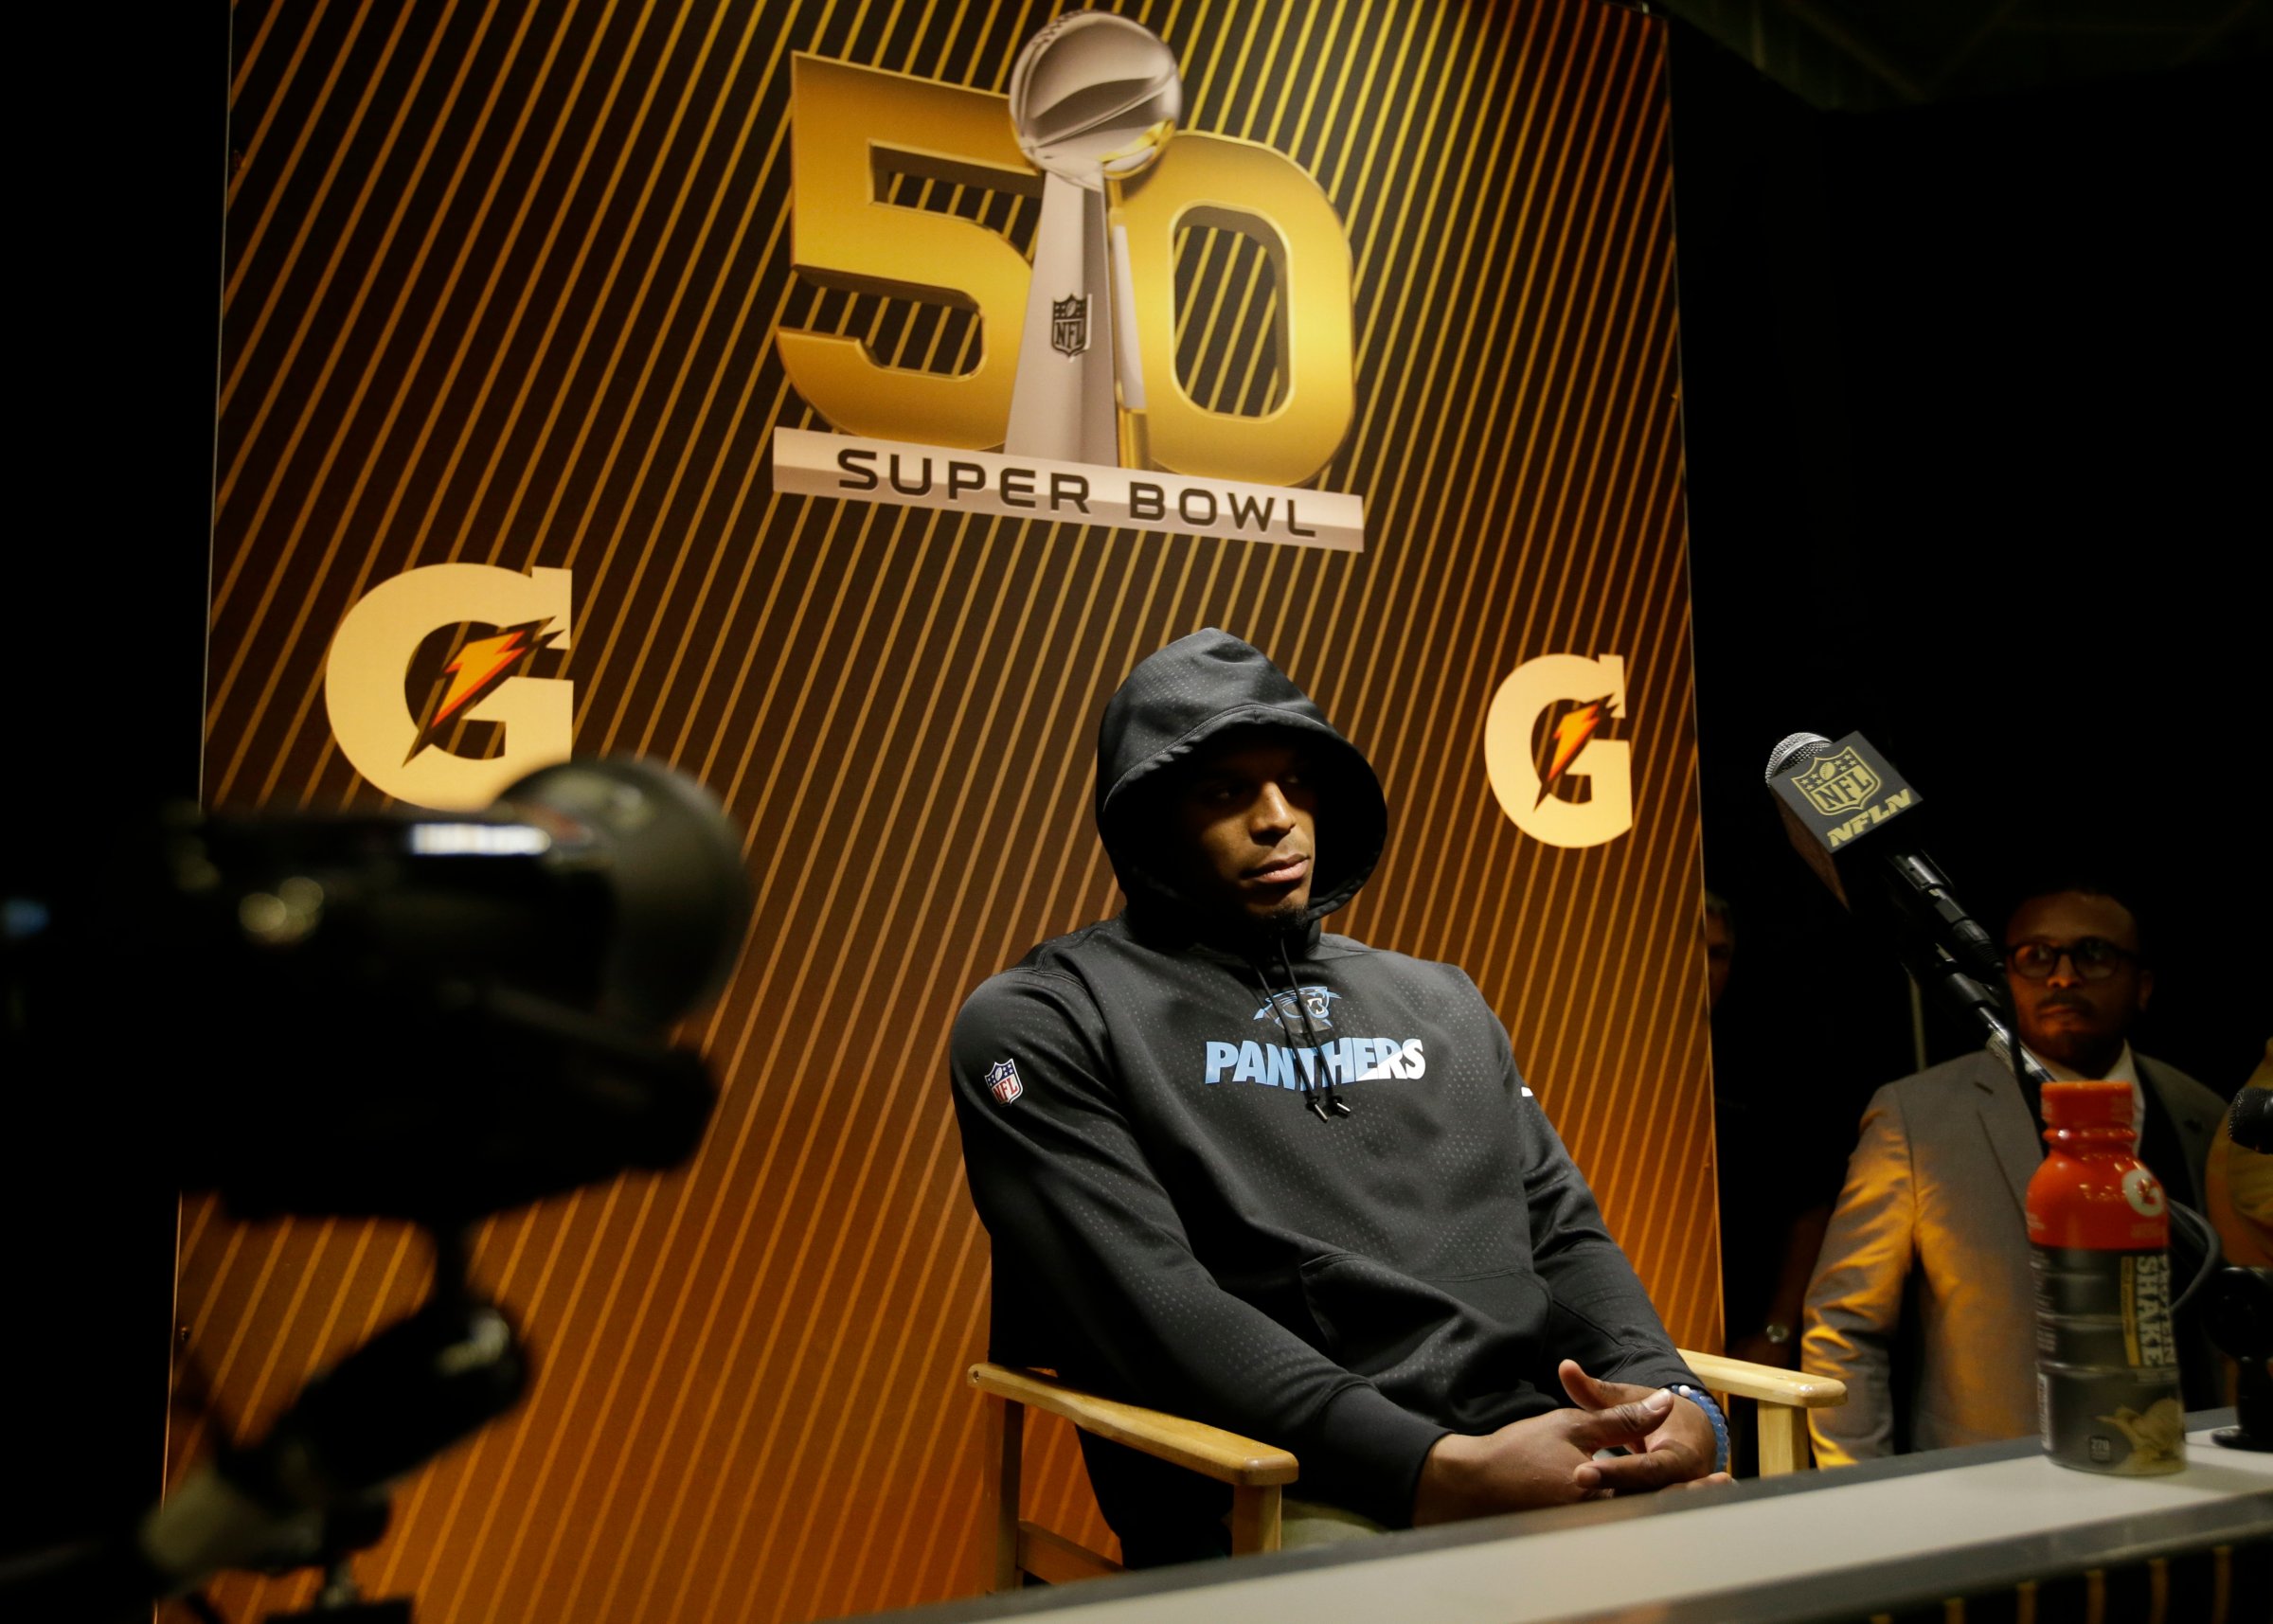 Carolina Panthers, Cam Newton answers questions after the NFL Super Bowl 50 football game against the Denver Broncos in Santa Clara, Calif. on Feb. 7, 2016.